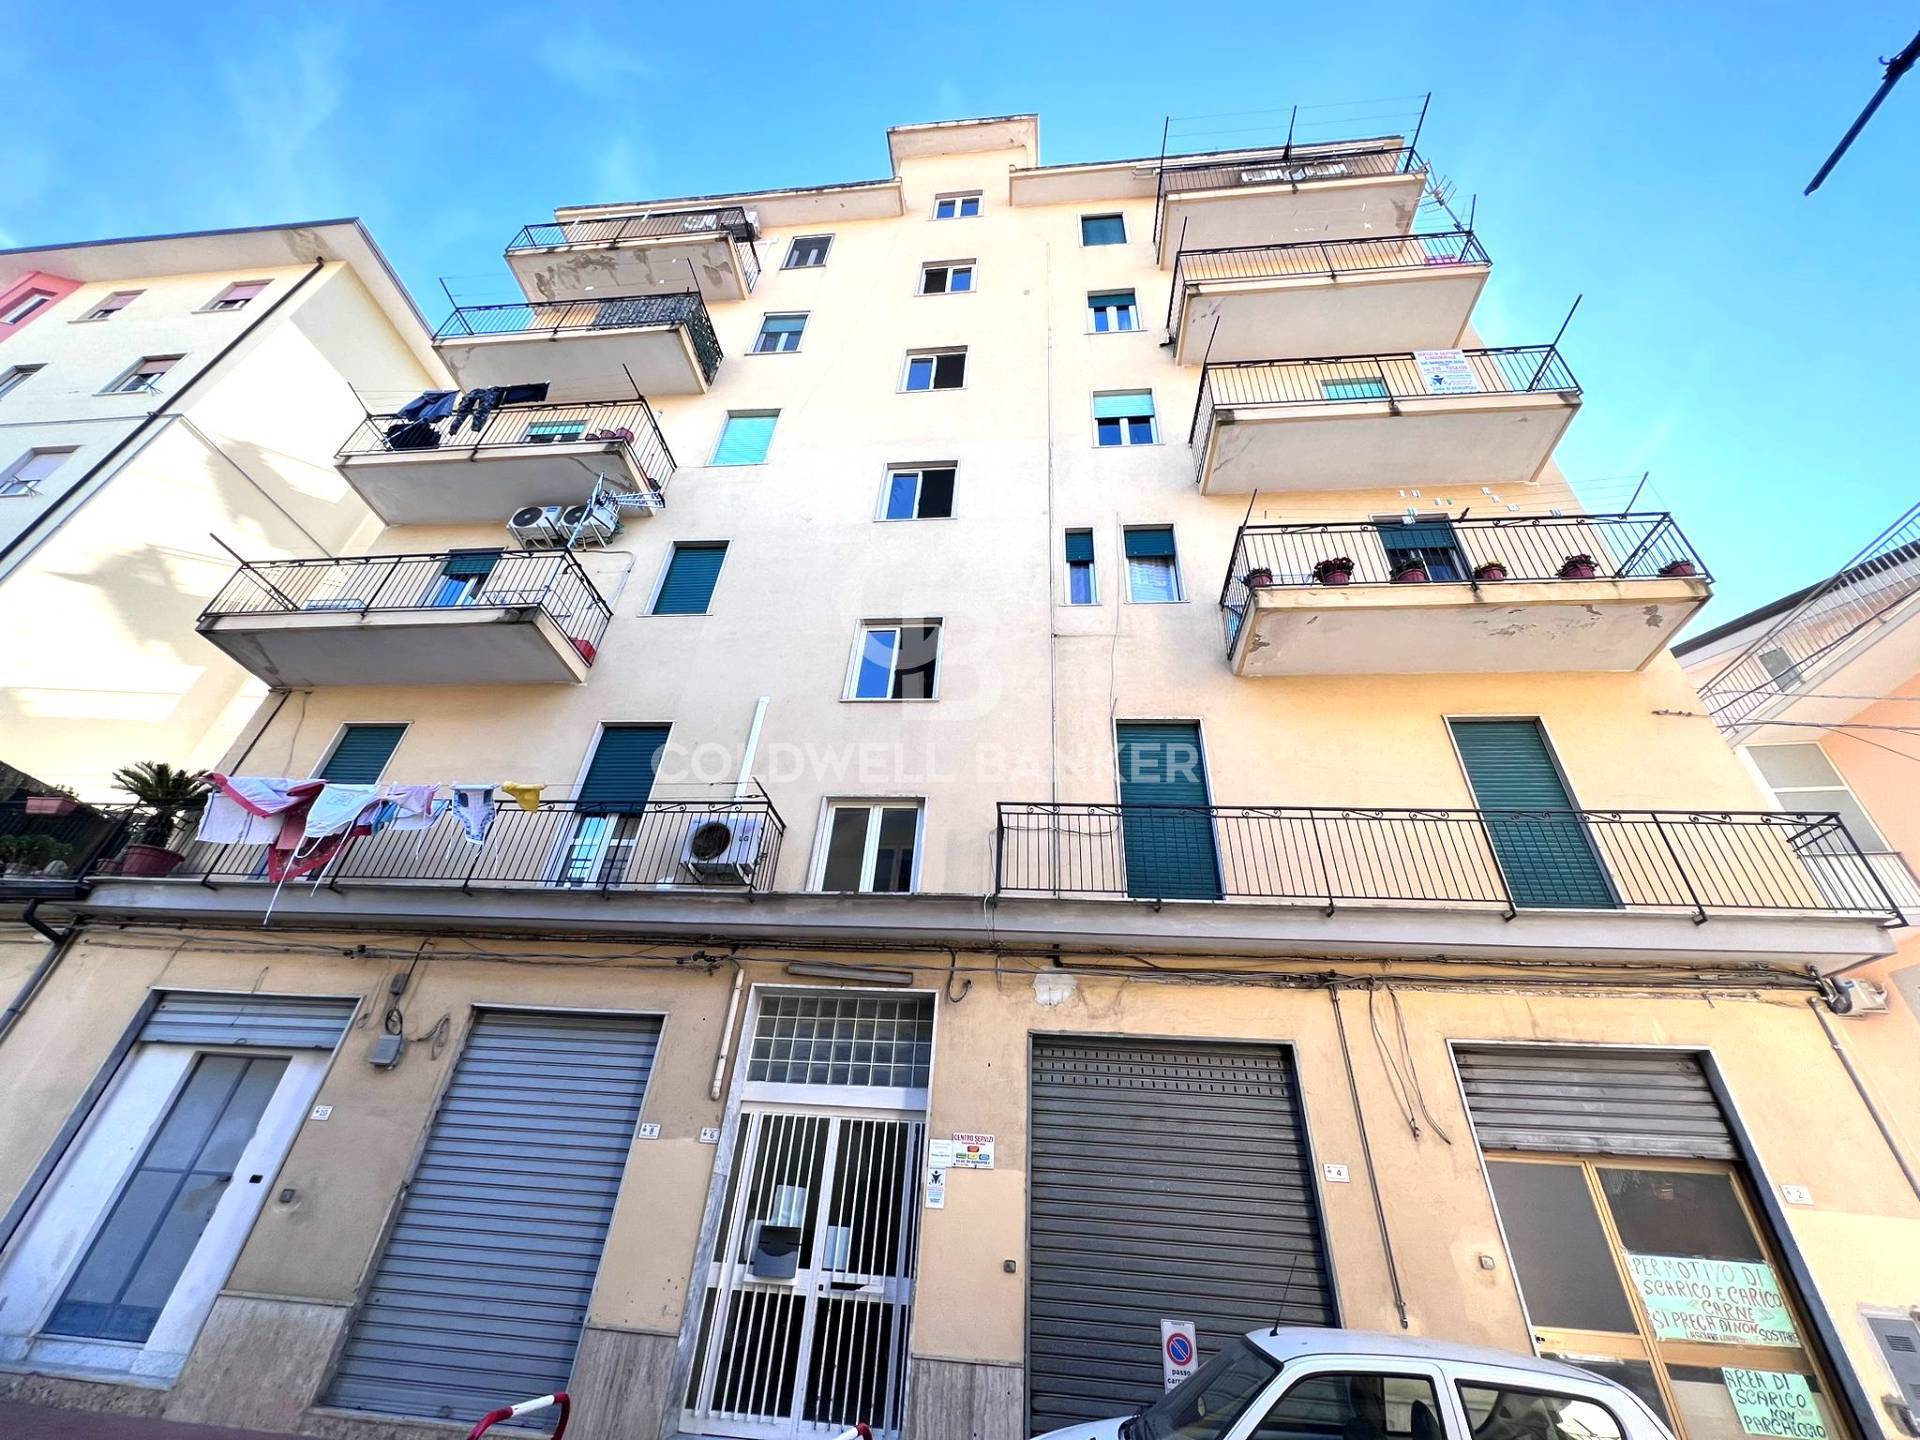 Appartamento in vendita a Agropoli, 3 locali, prezzo € 120.000 | PortaleAgenzieImmobiliari.it